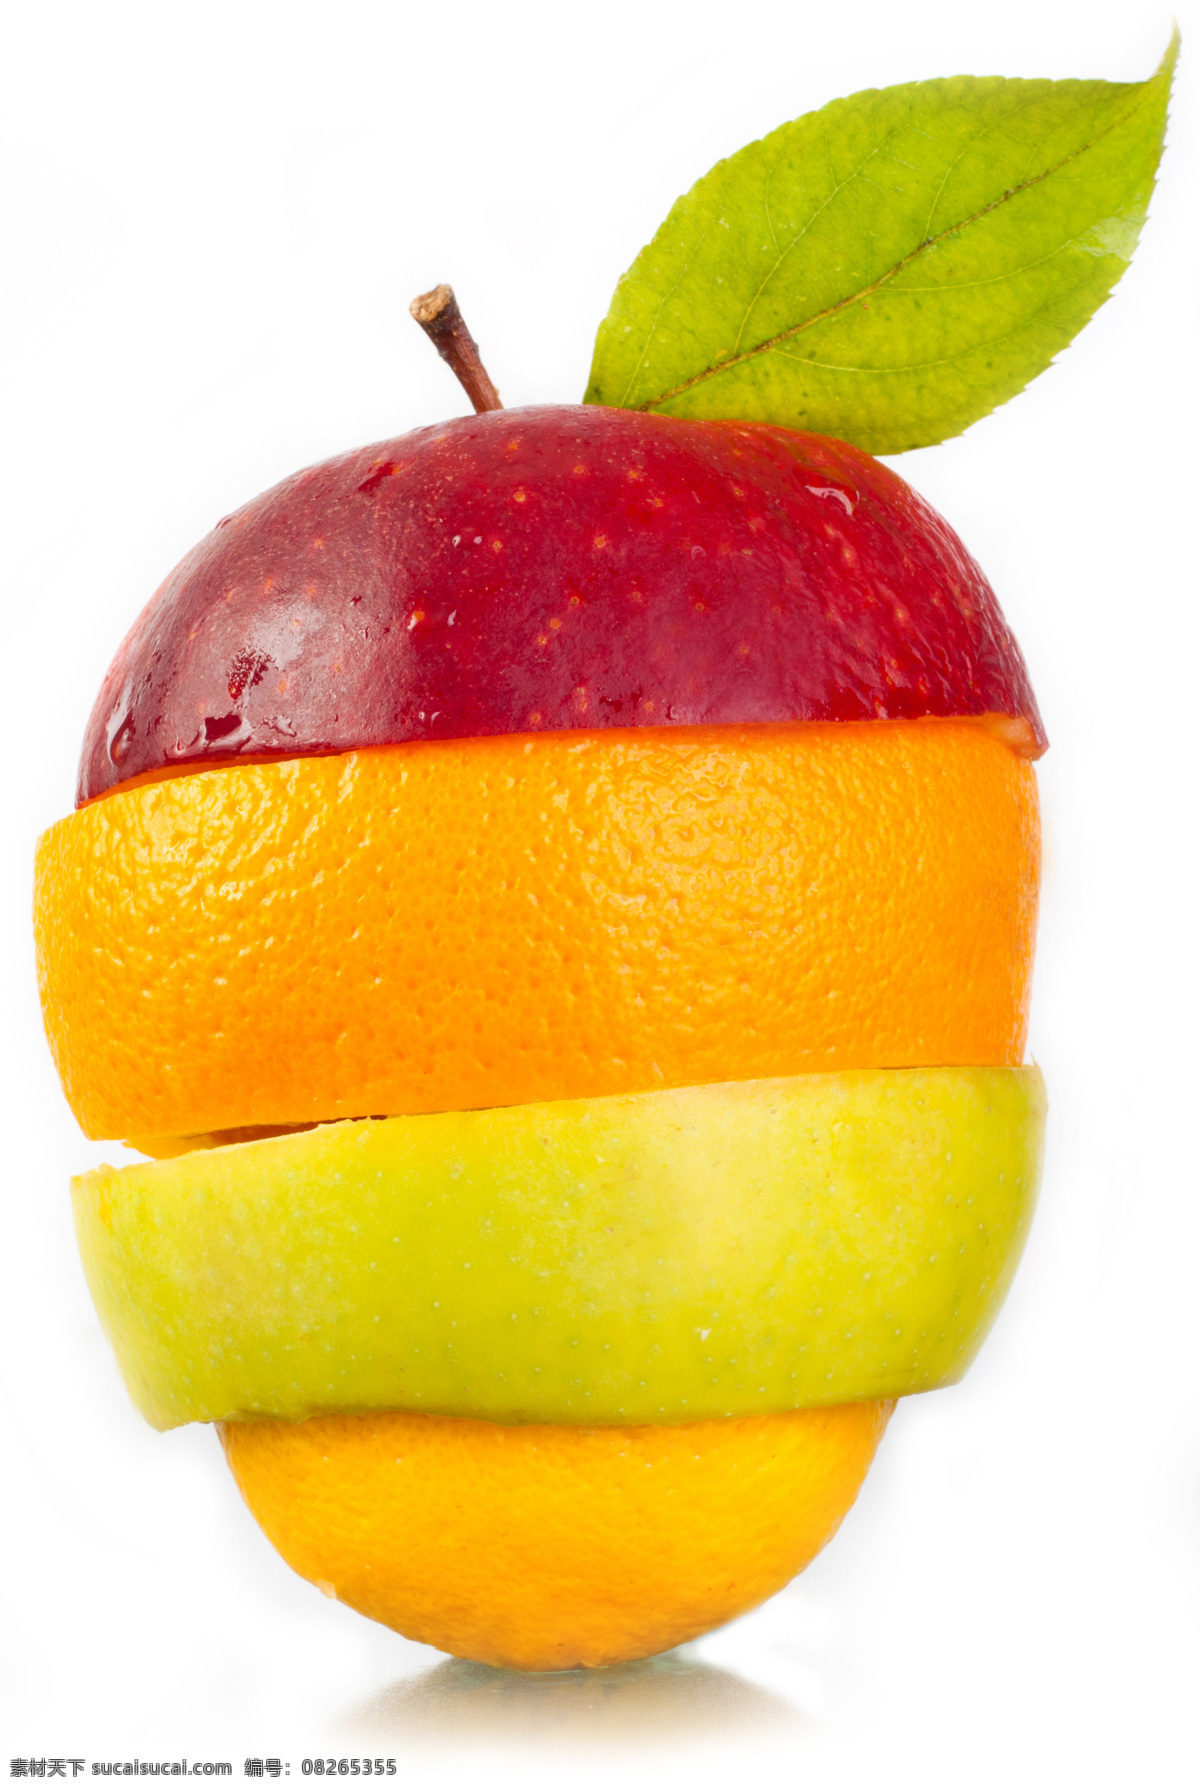 创意合成水果 创意合成 创意海报素材 苹果 橙子 青苹果 环绕 叶子 高清大图 设计素材 水果蔬菜 餐饮美食 白色